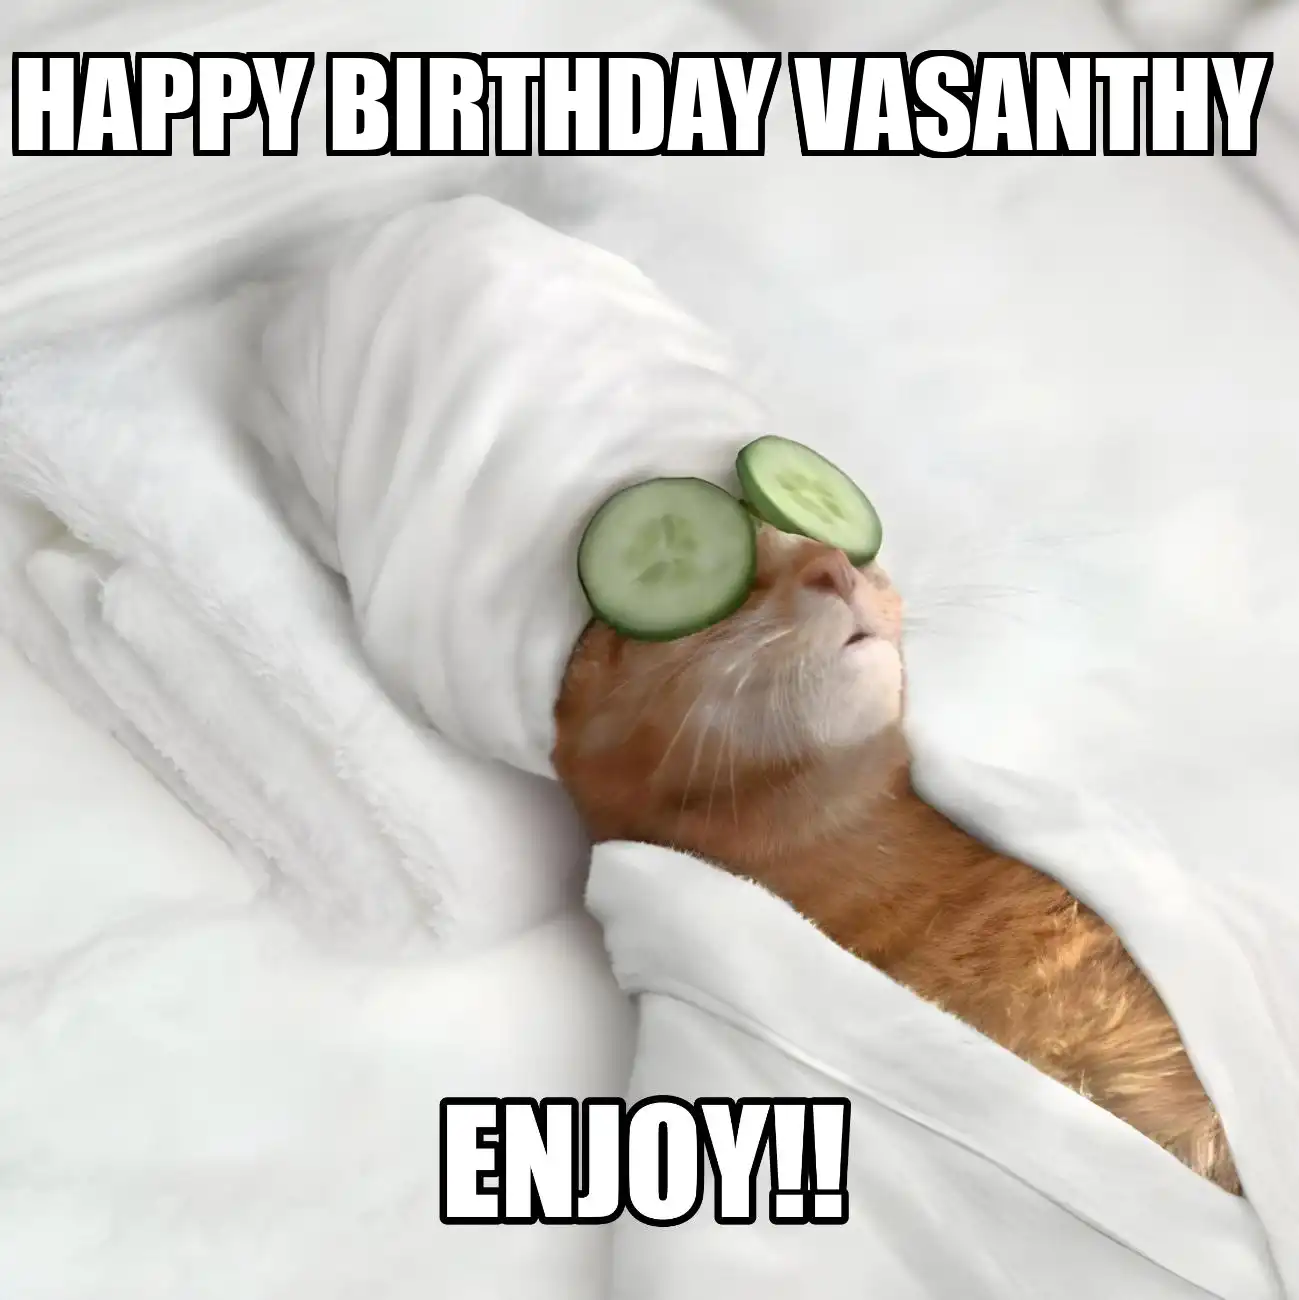 Happy Birthday Vasanthy Enjoy Cat Meme